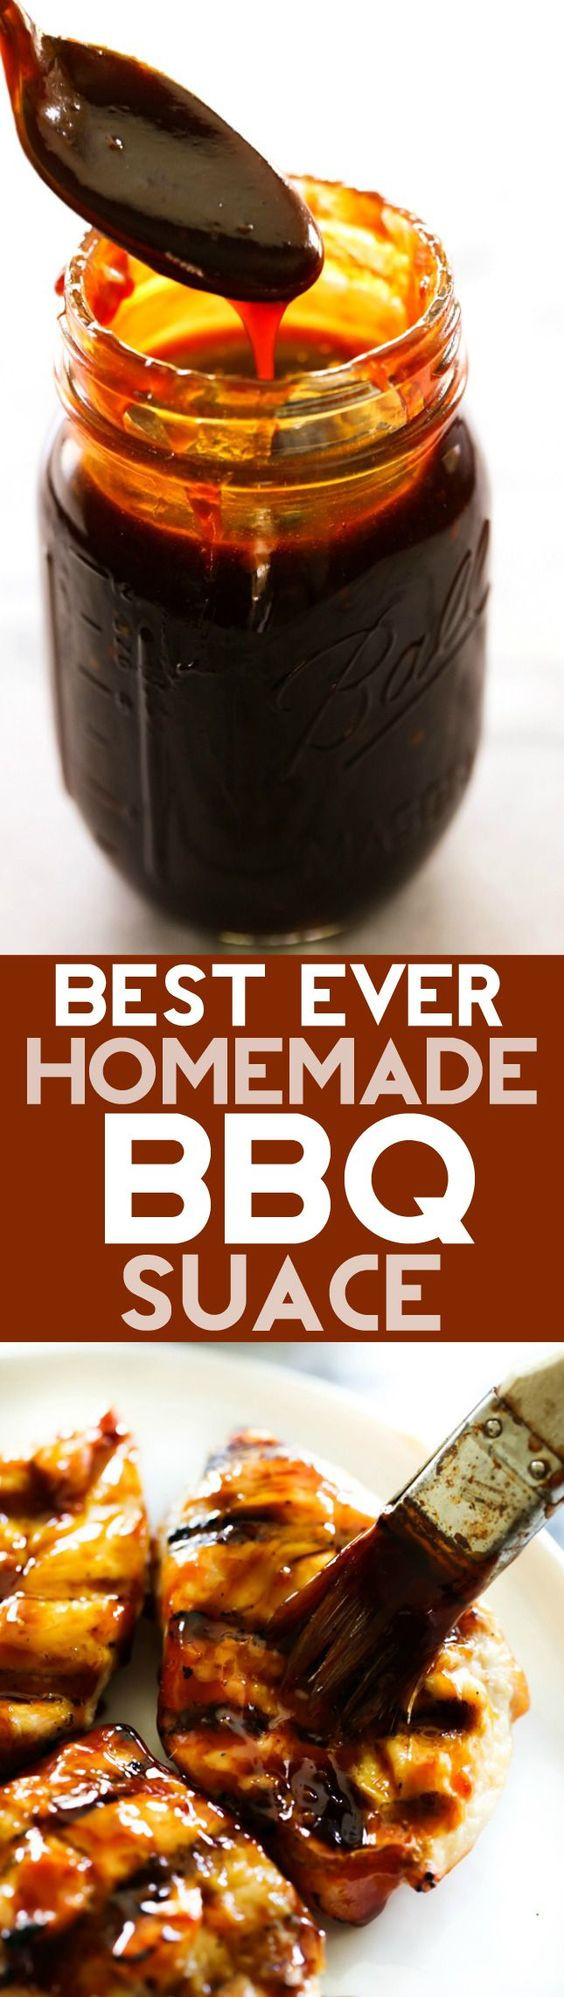 Best Homemade Bbq Sauce
 Best Ever Homemade BBQ Sauce Recipe